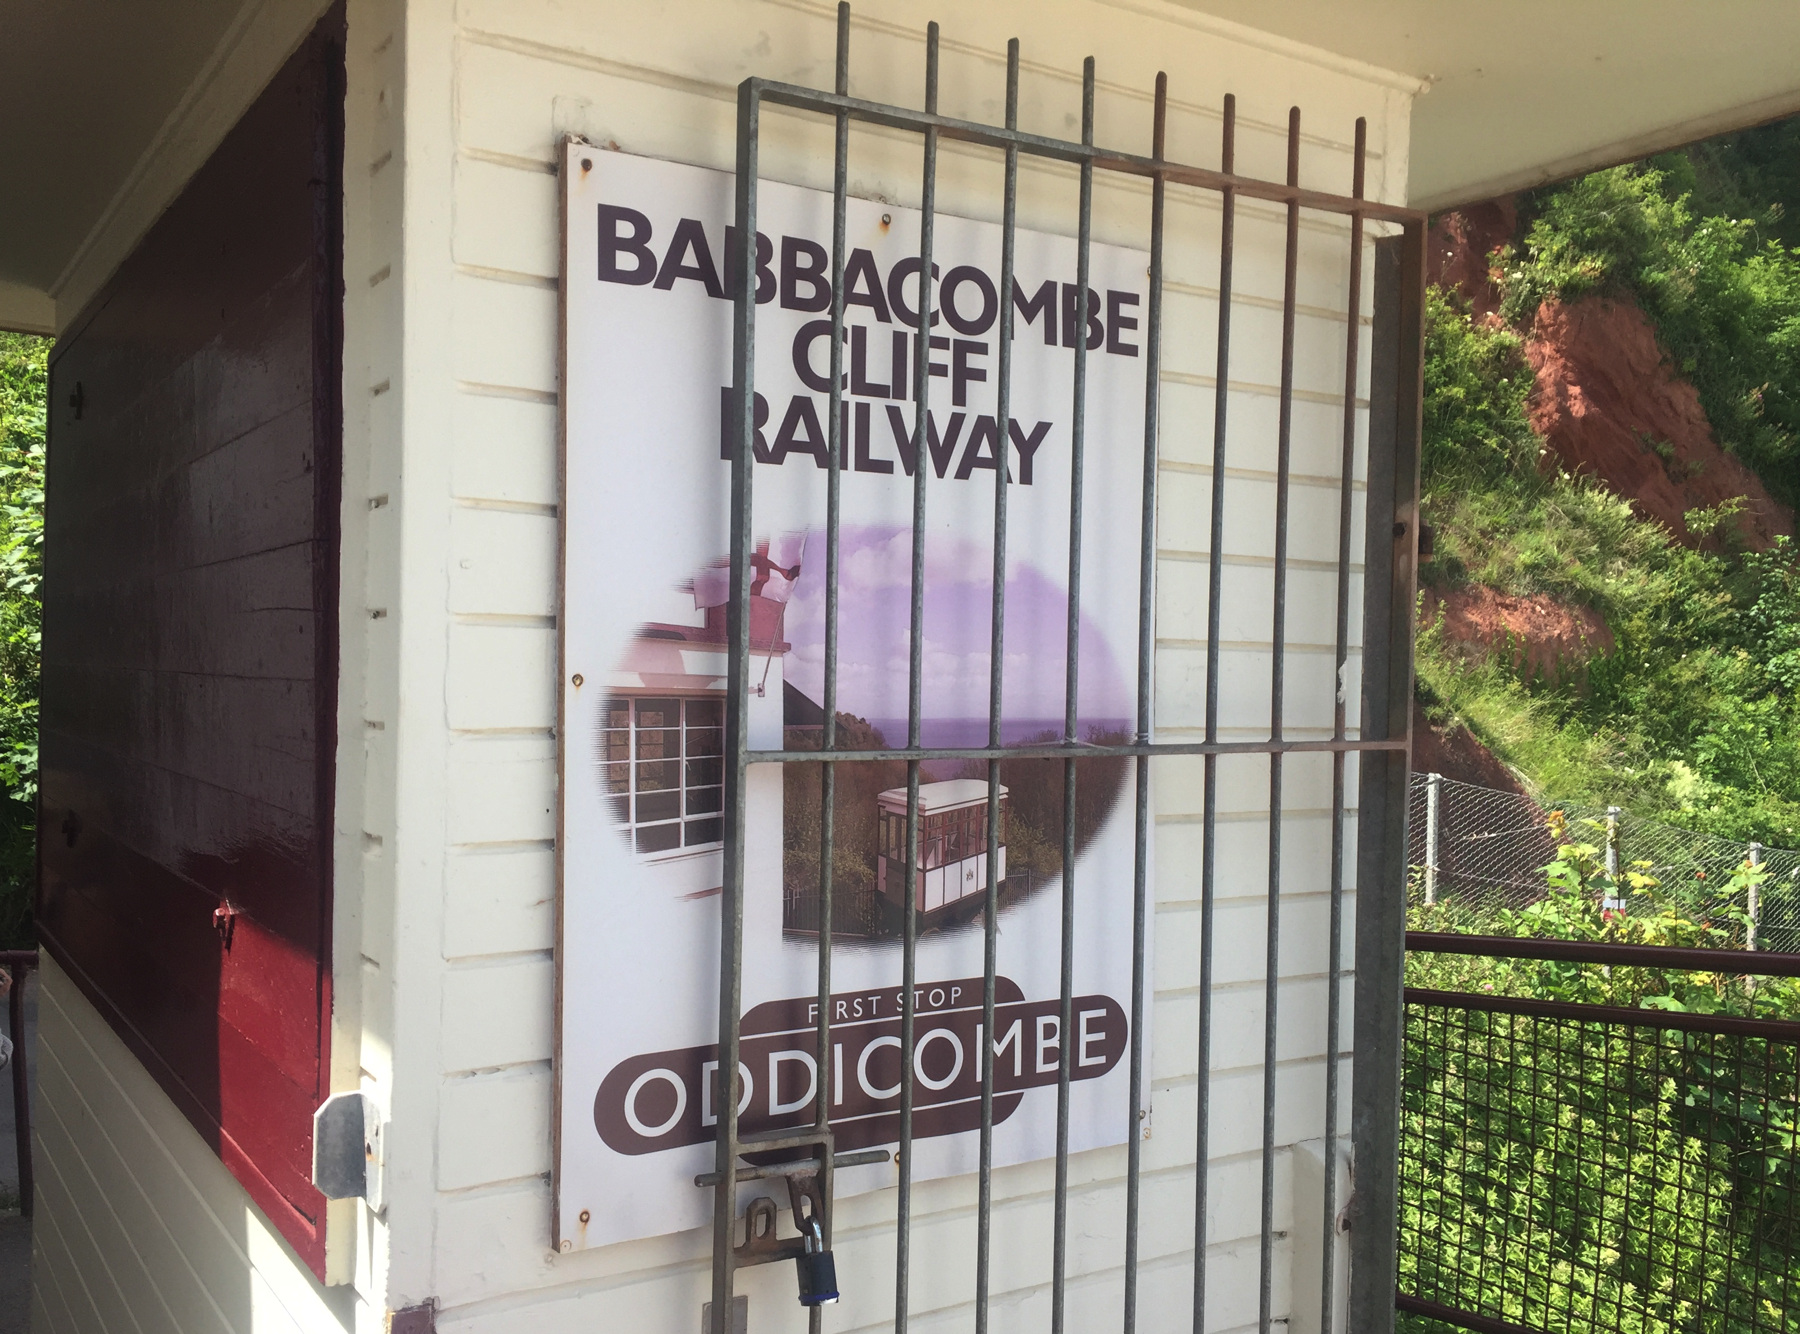 Babbacombe